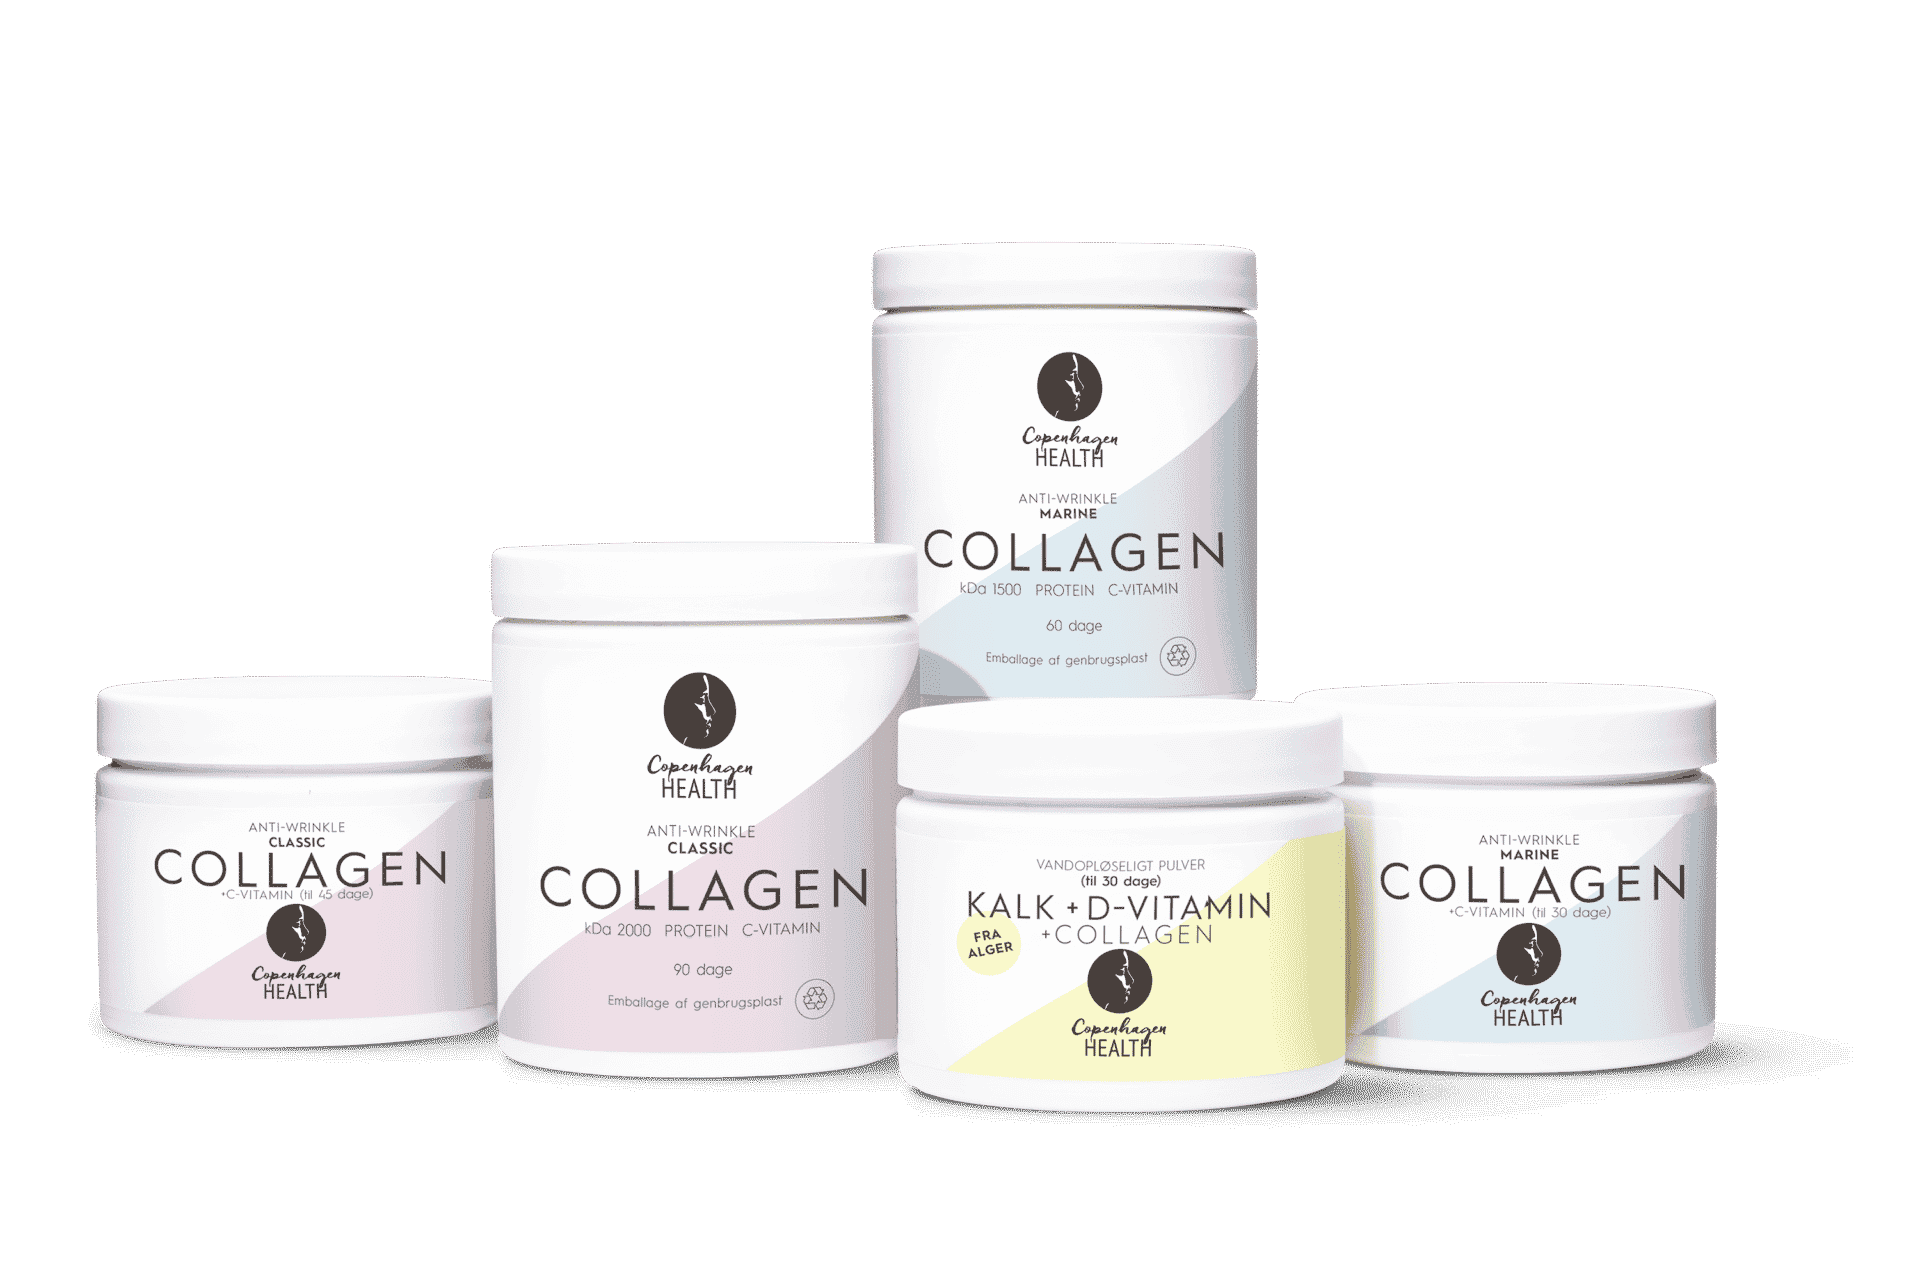 Alle vores Collagen produkter fra Copenhagen Health